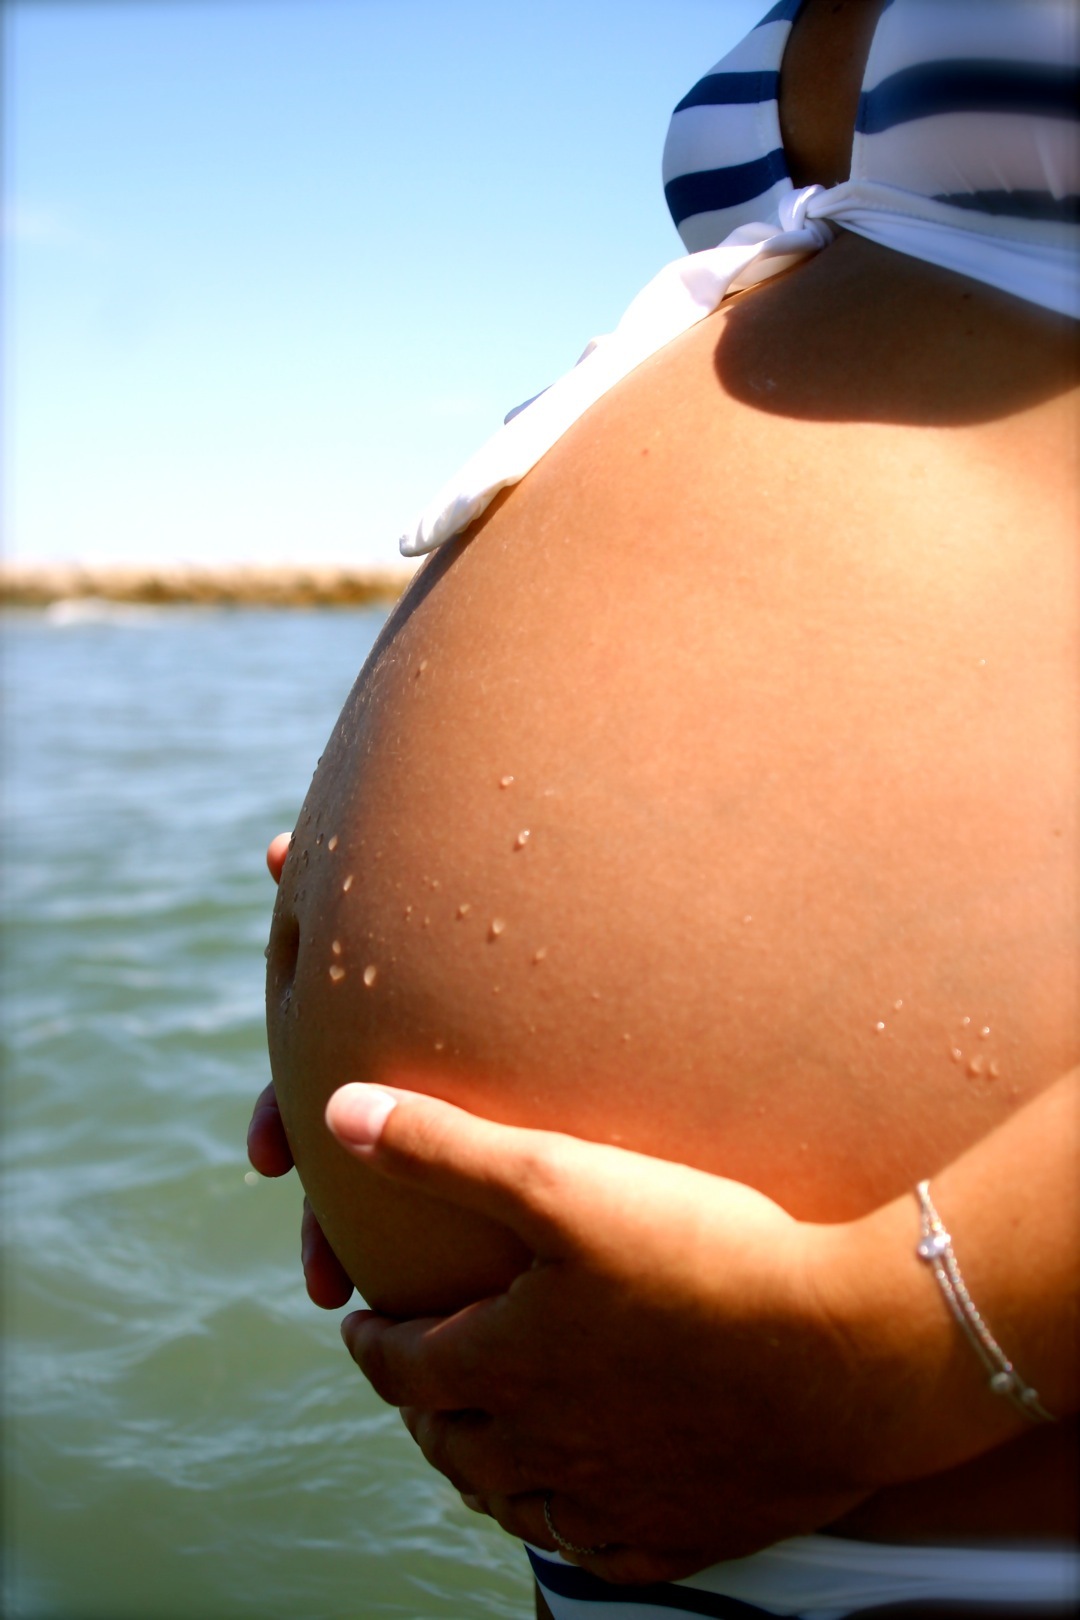 Une grossesse tardive présente un peu plus de risques de complications qu'une grossesse à un âge moins avancé. Cependant, avec les progrès de la médecine, elle est très bien encadrée et se déroule le plus souvent sans difficulté majeure. © Patrick Ouali, Fotopédia, cc by nc 3.0